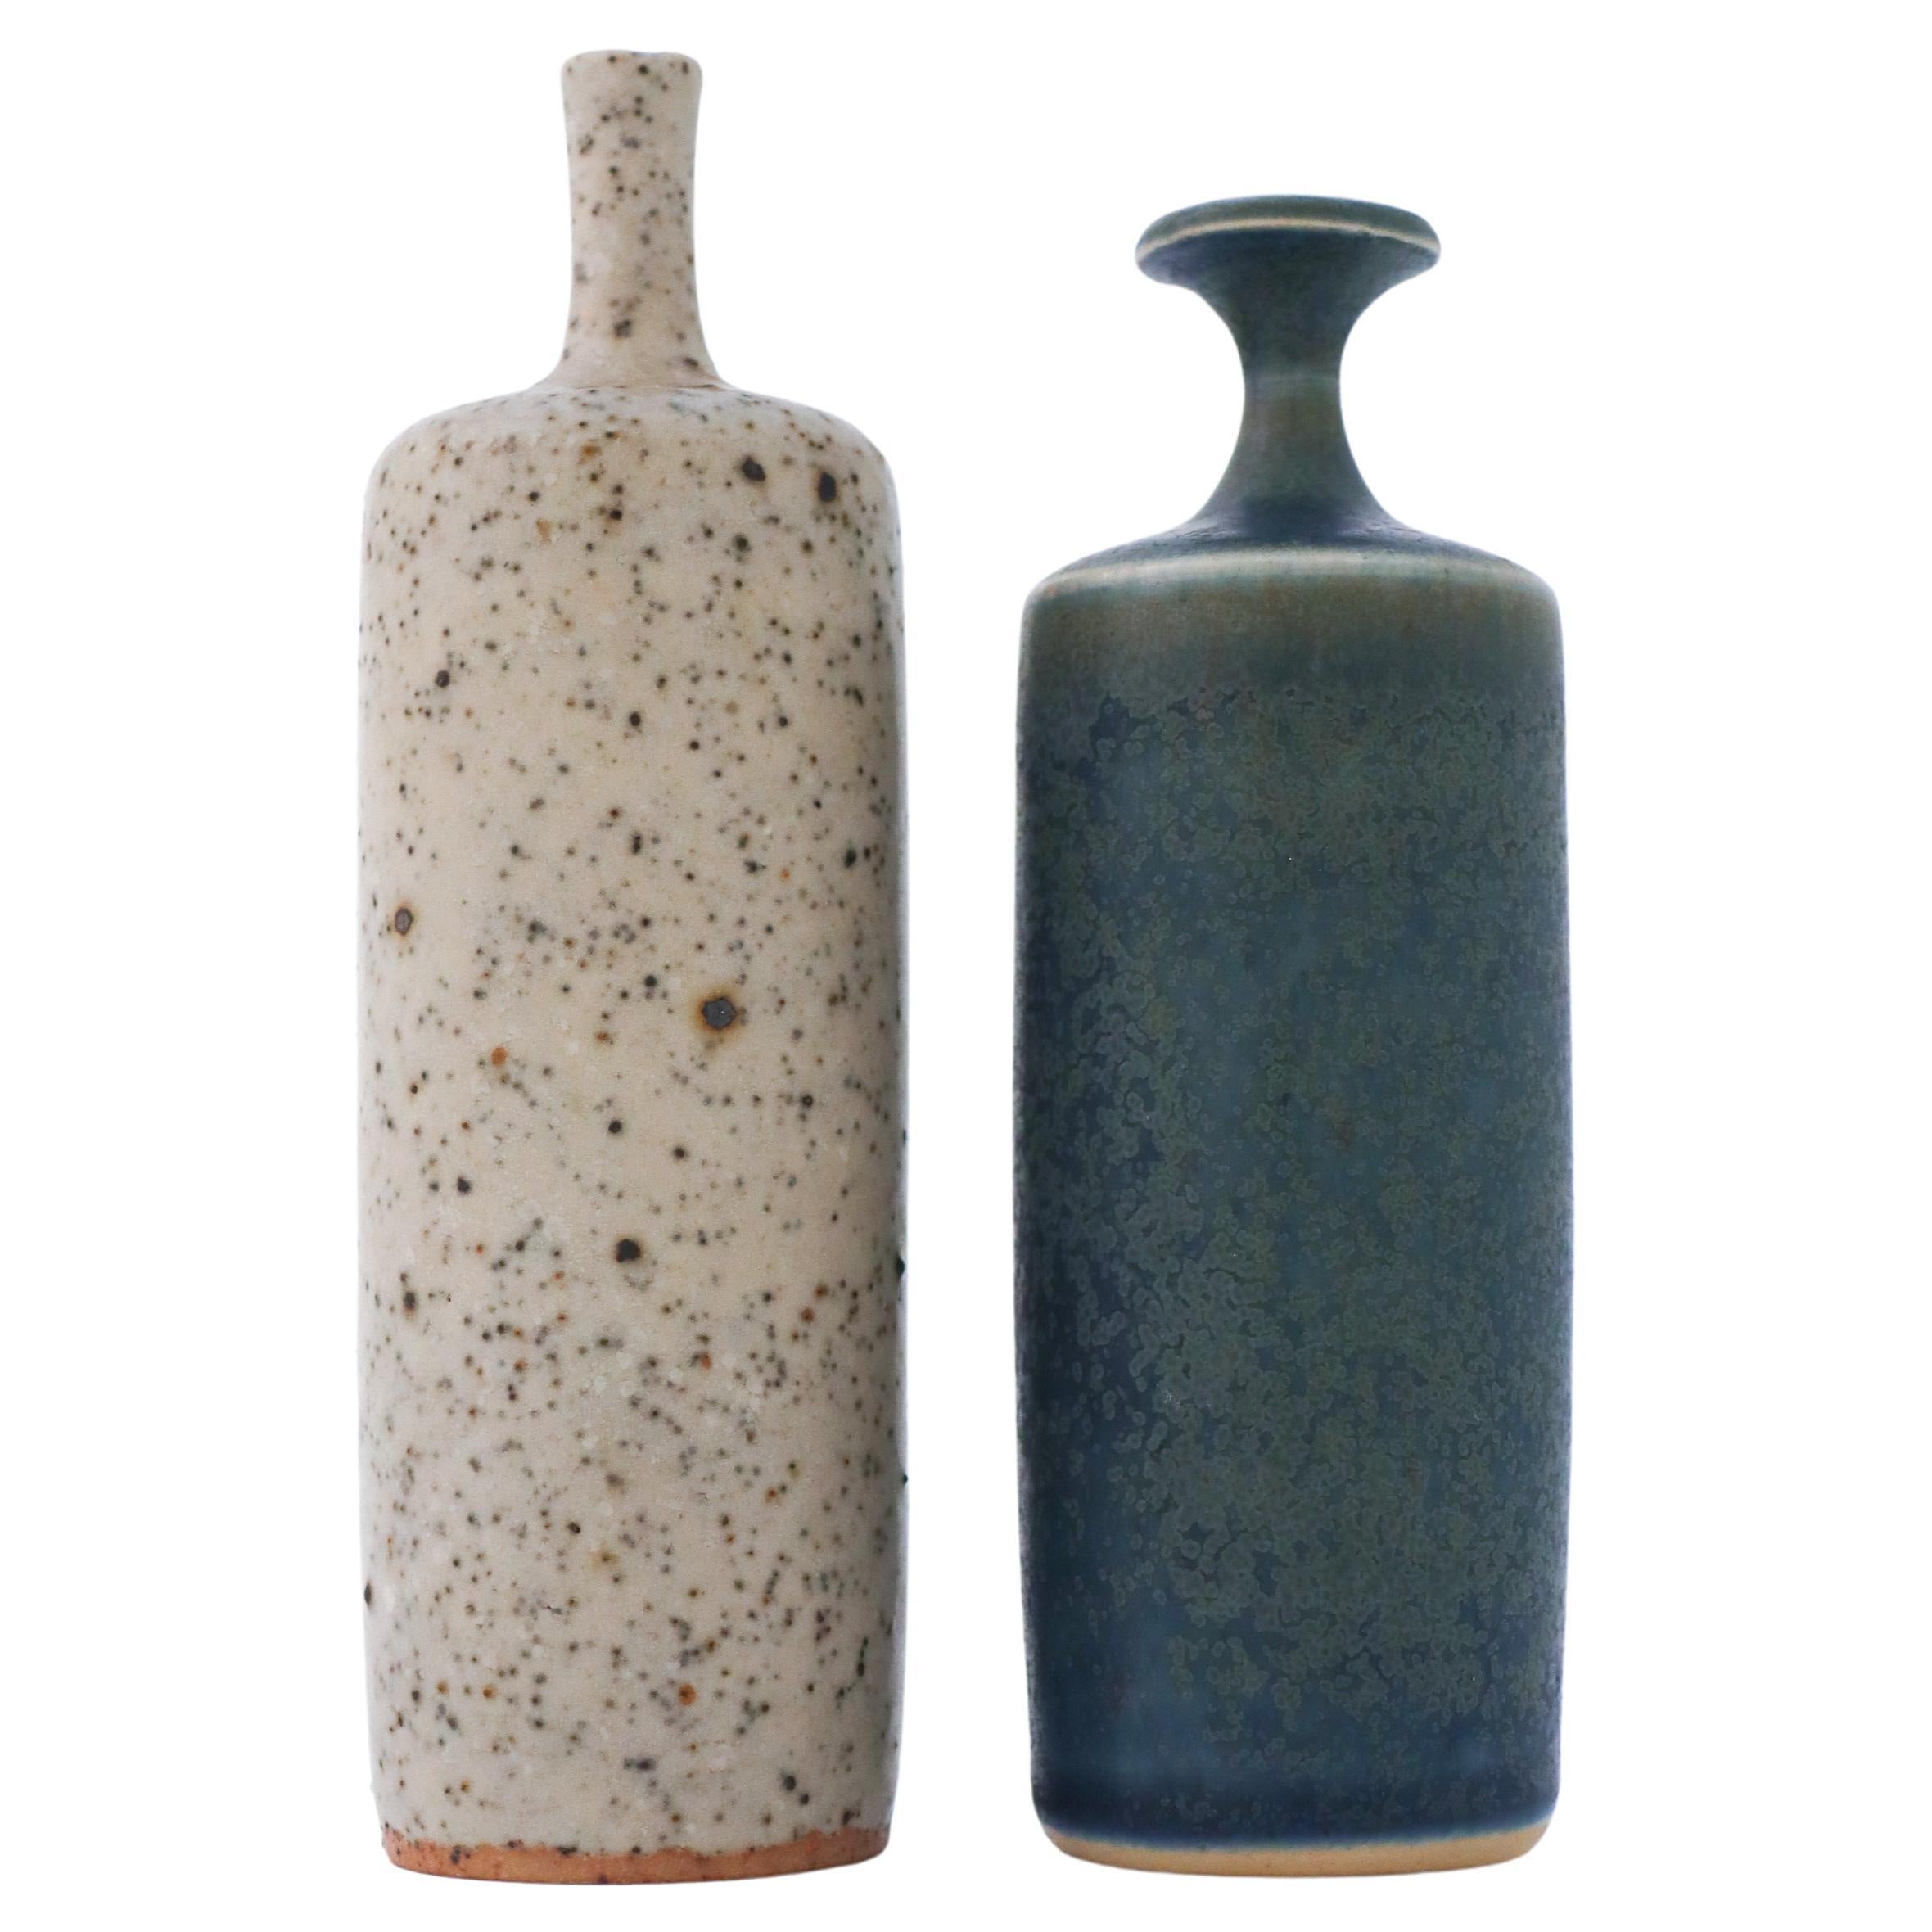 2 Lovely Ceramic Vases Grey & Blue, Rolf Palm, Mölle Sweden Scandinavian Modern For Sale